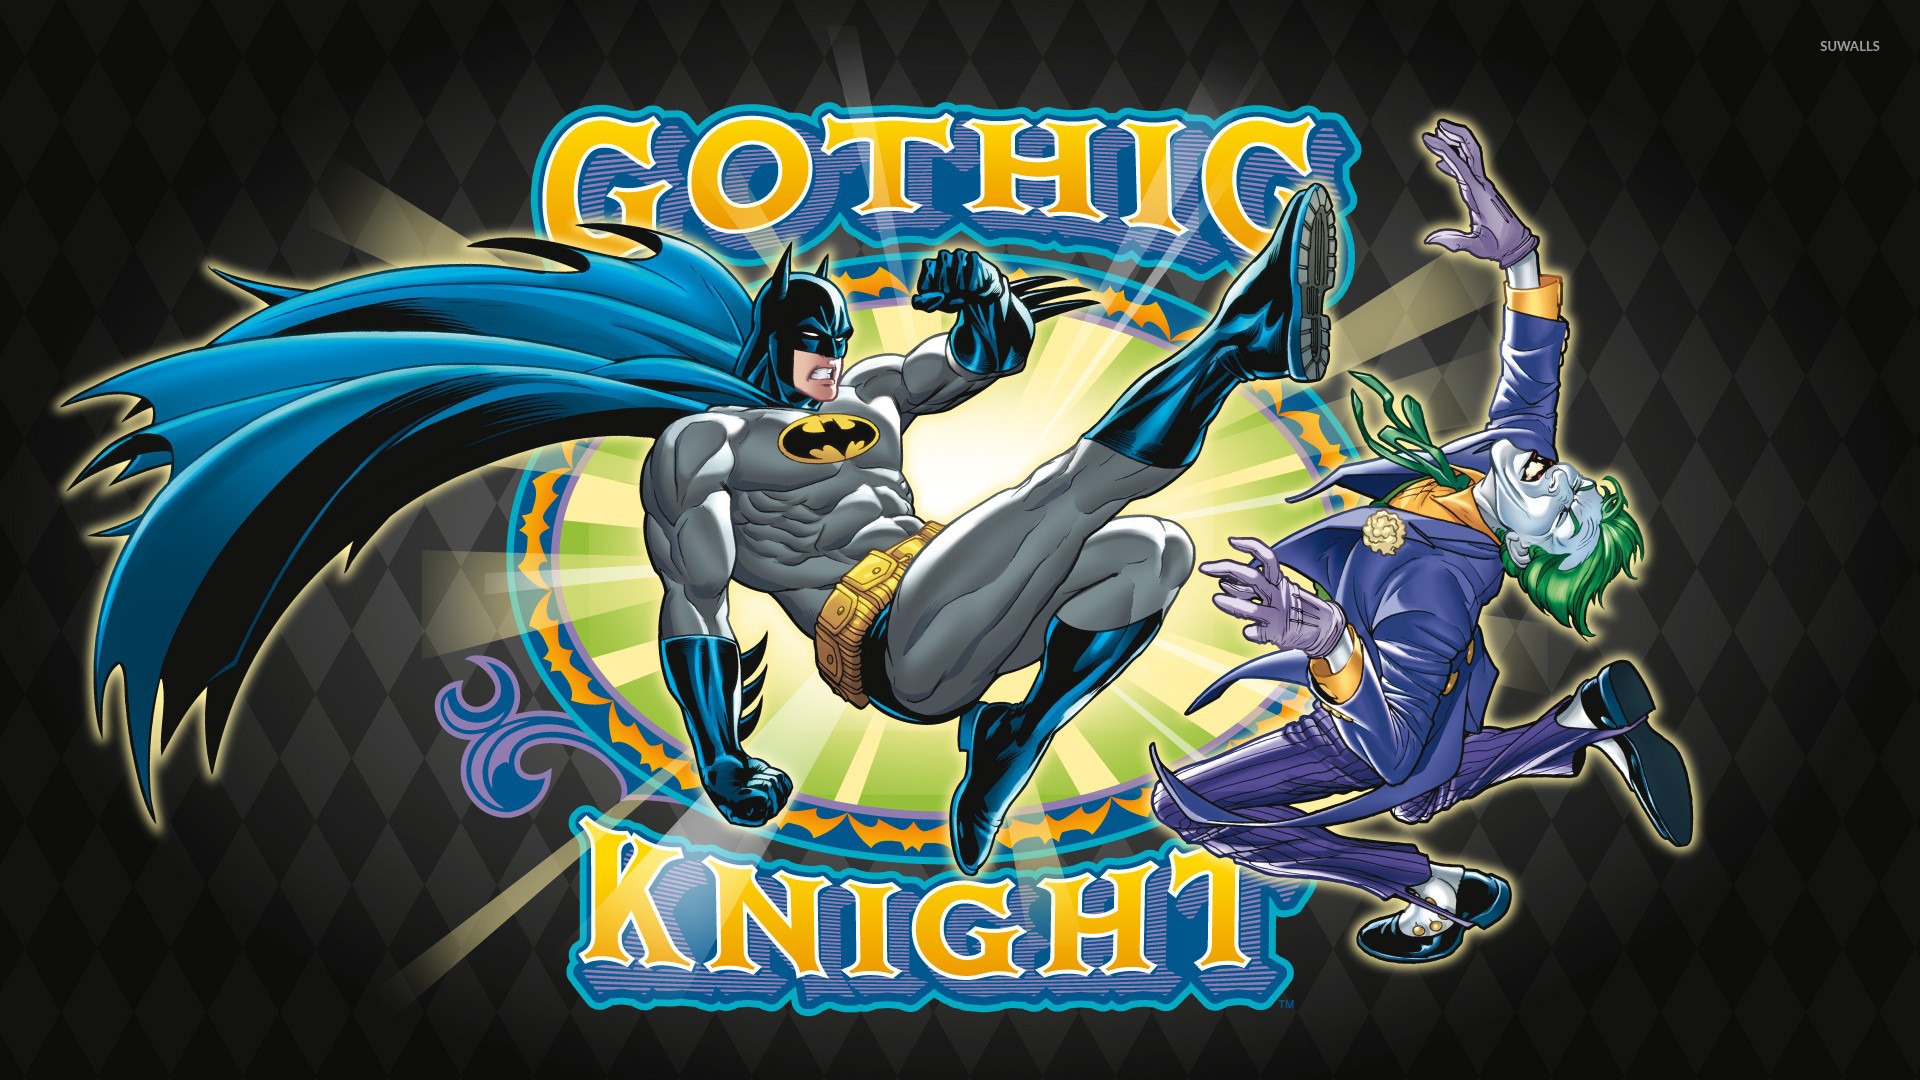 Batman And Joker Cartoon - HD Wallpaper 